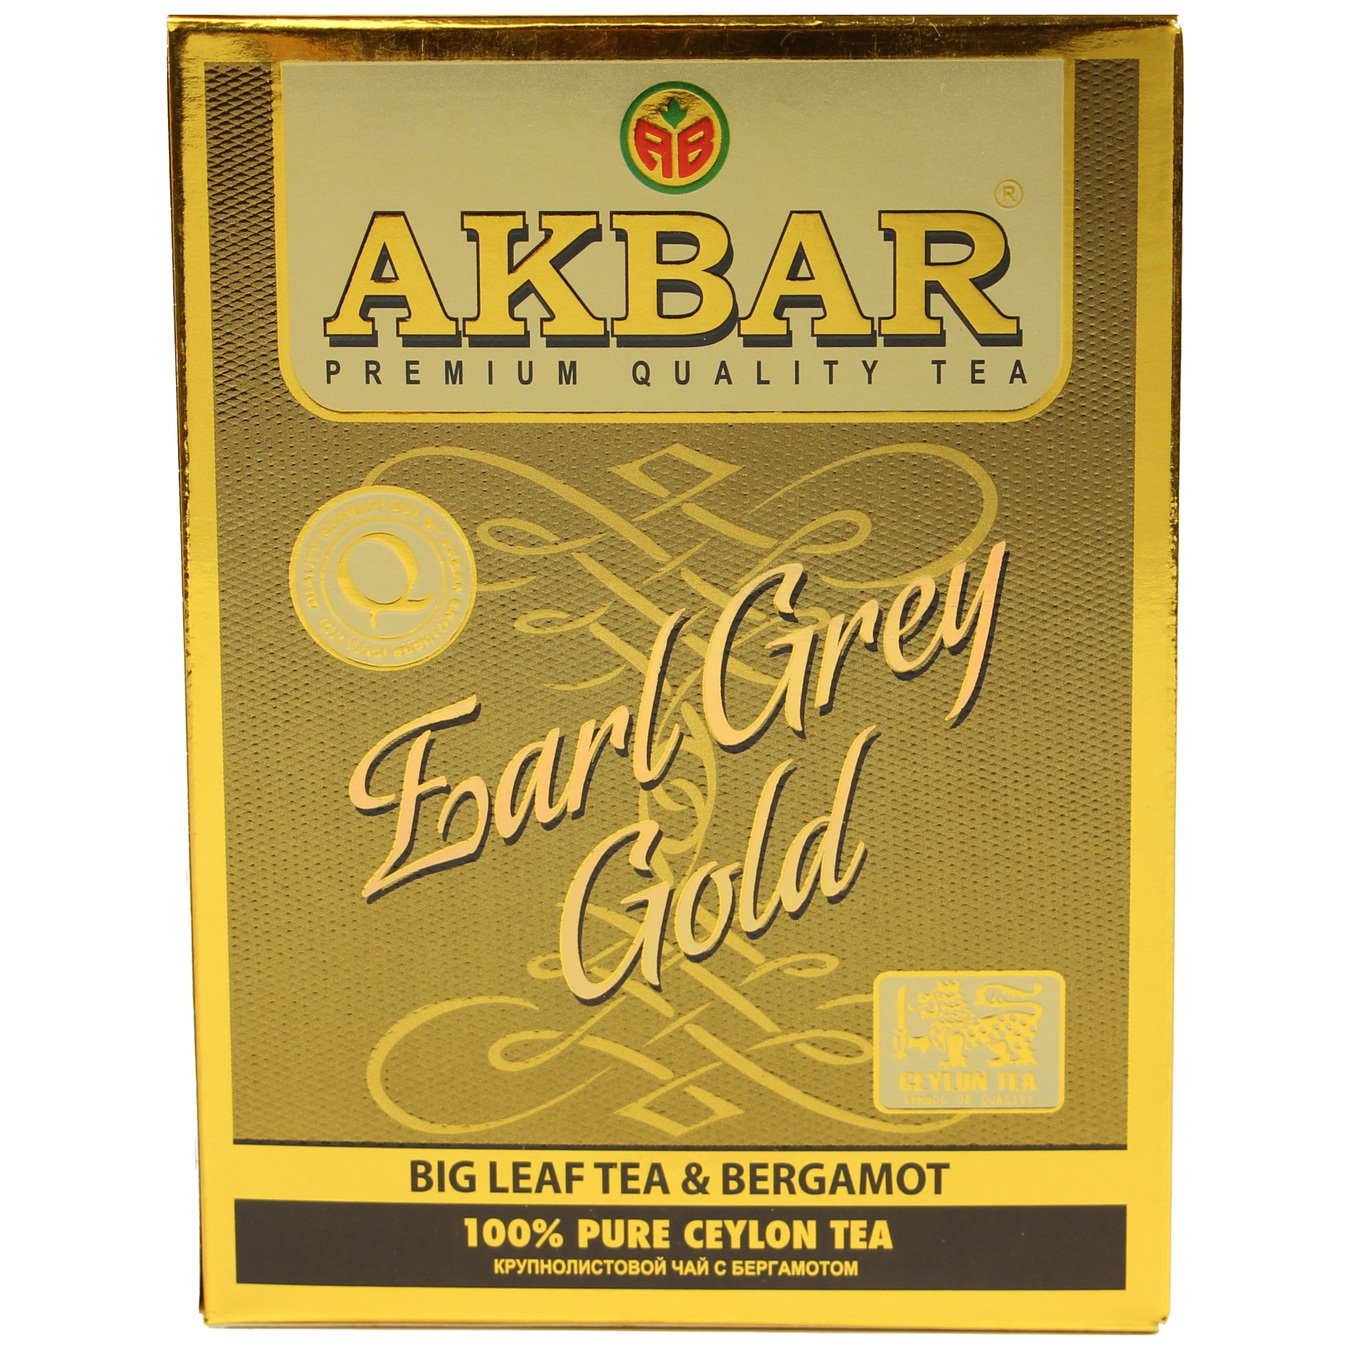 Black tea Akbar Earl Grey Gold with bergamot big leaf 80g